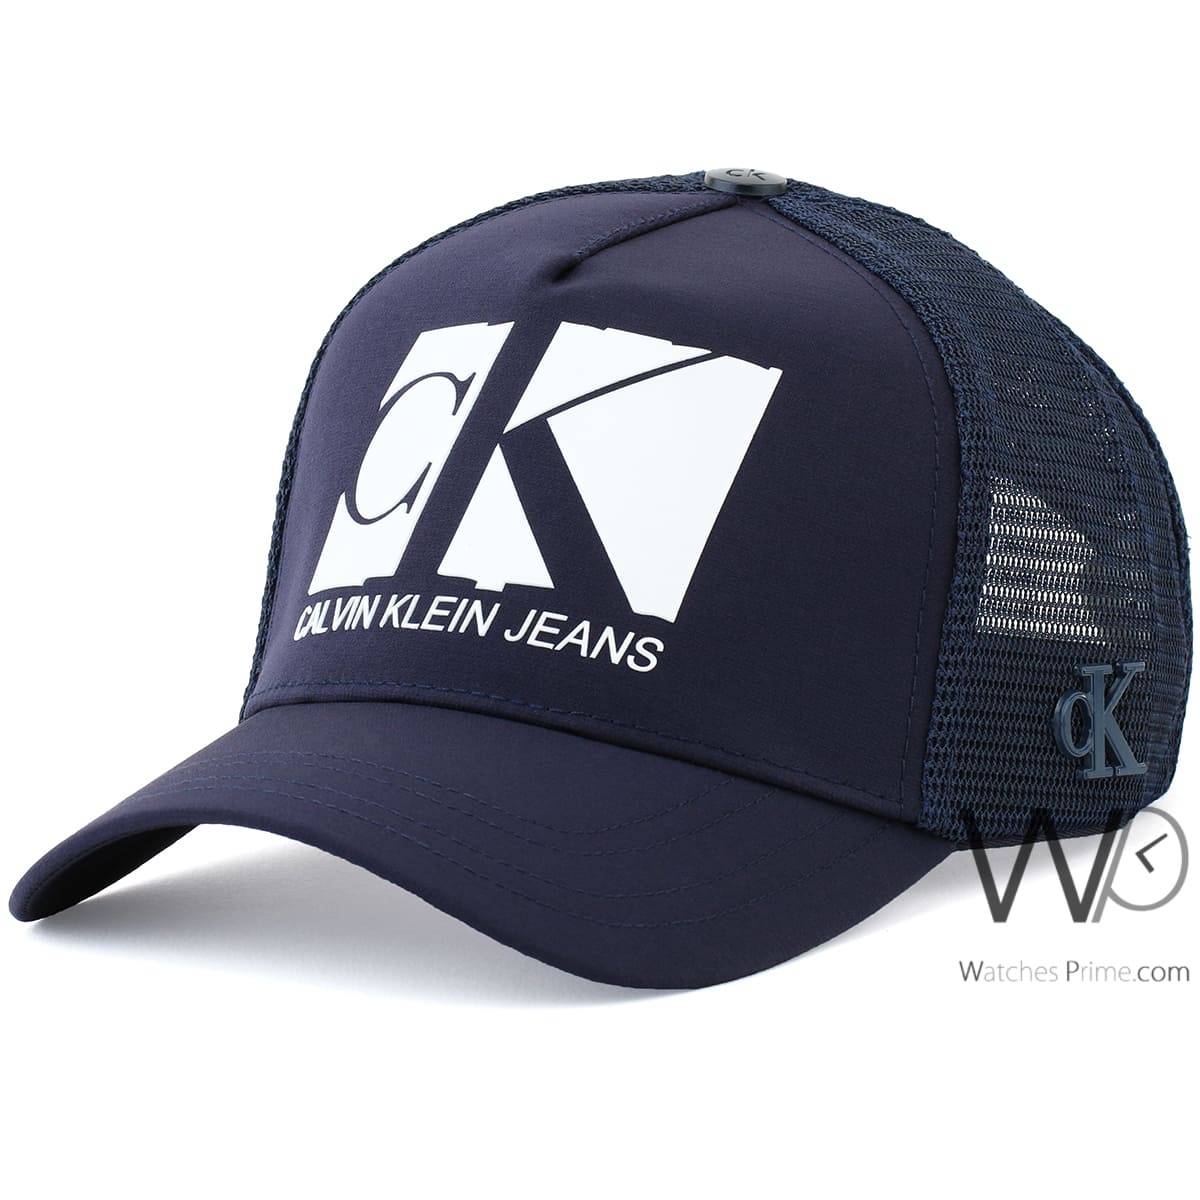 blue baseball Prime cap men navy Klein | Watches Calvin CK